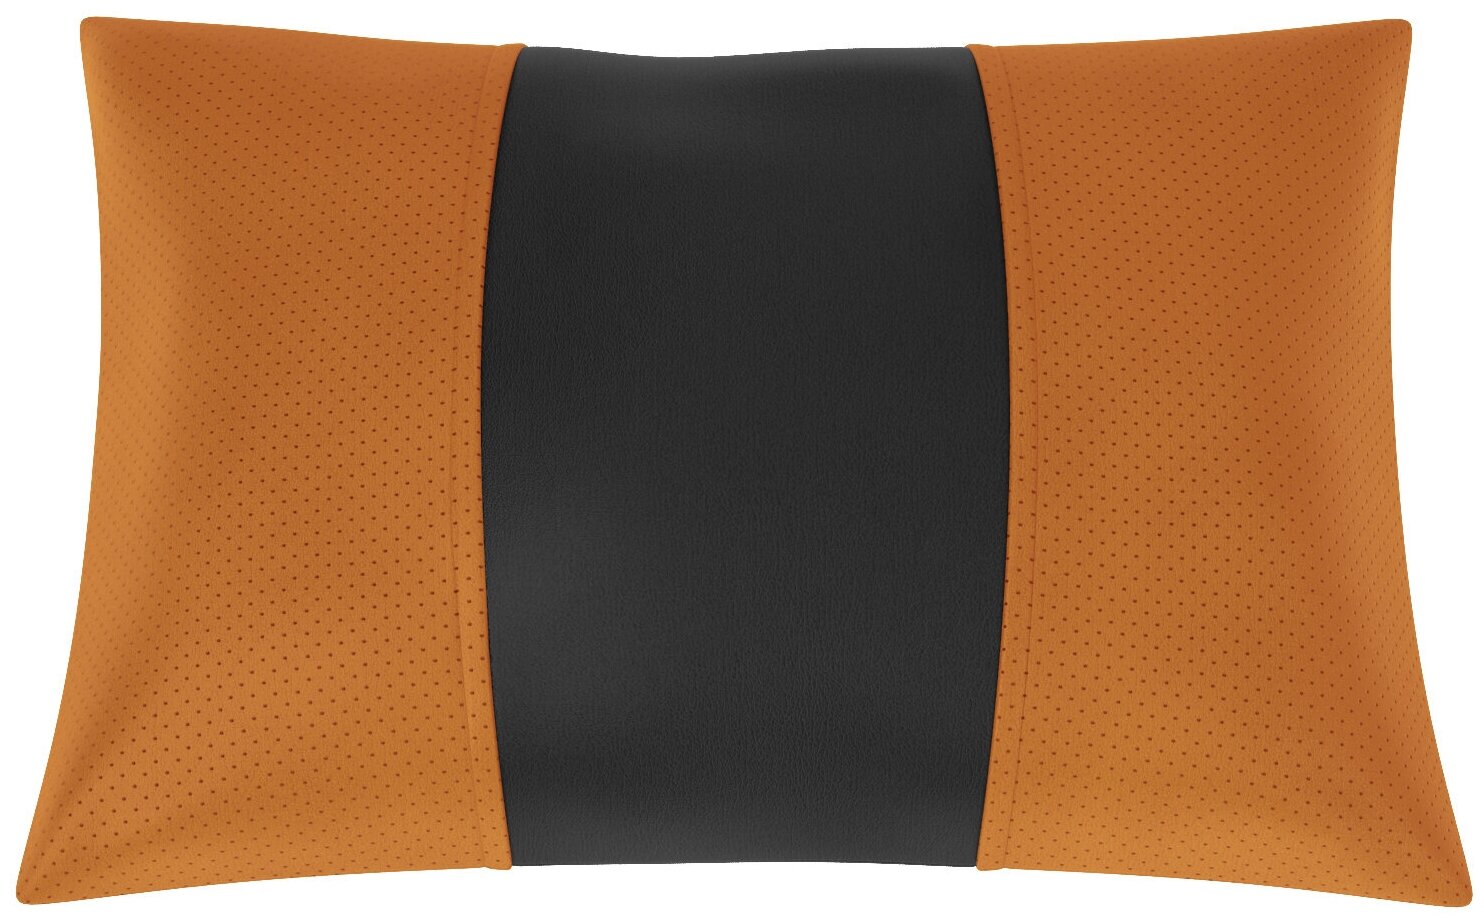 Автомобильная подушка для Rover 75 (Ровер 75). Экокожа. Середина: чёрная гладкая экокожа. Боковины: оранжевая экокожа с перфорацией. 1 шт.